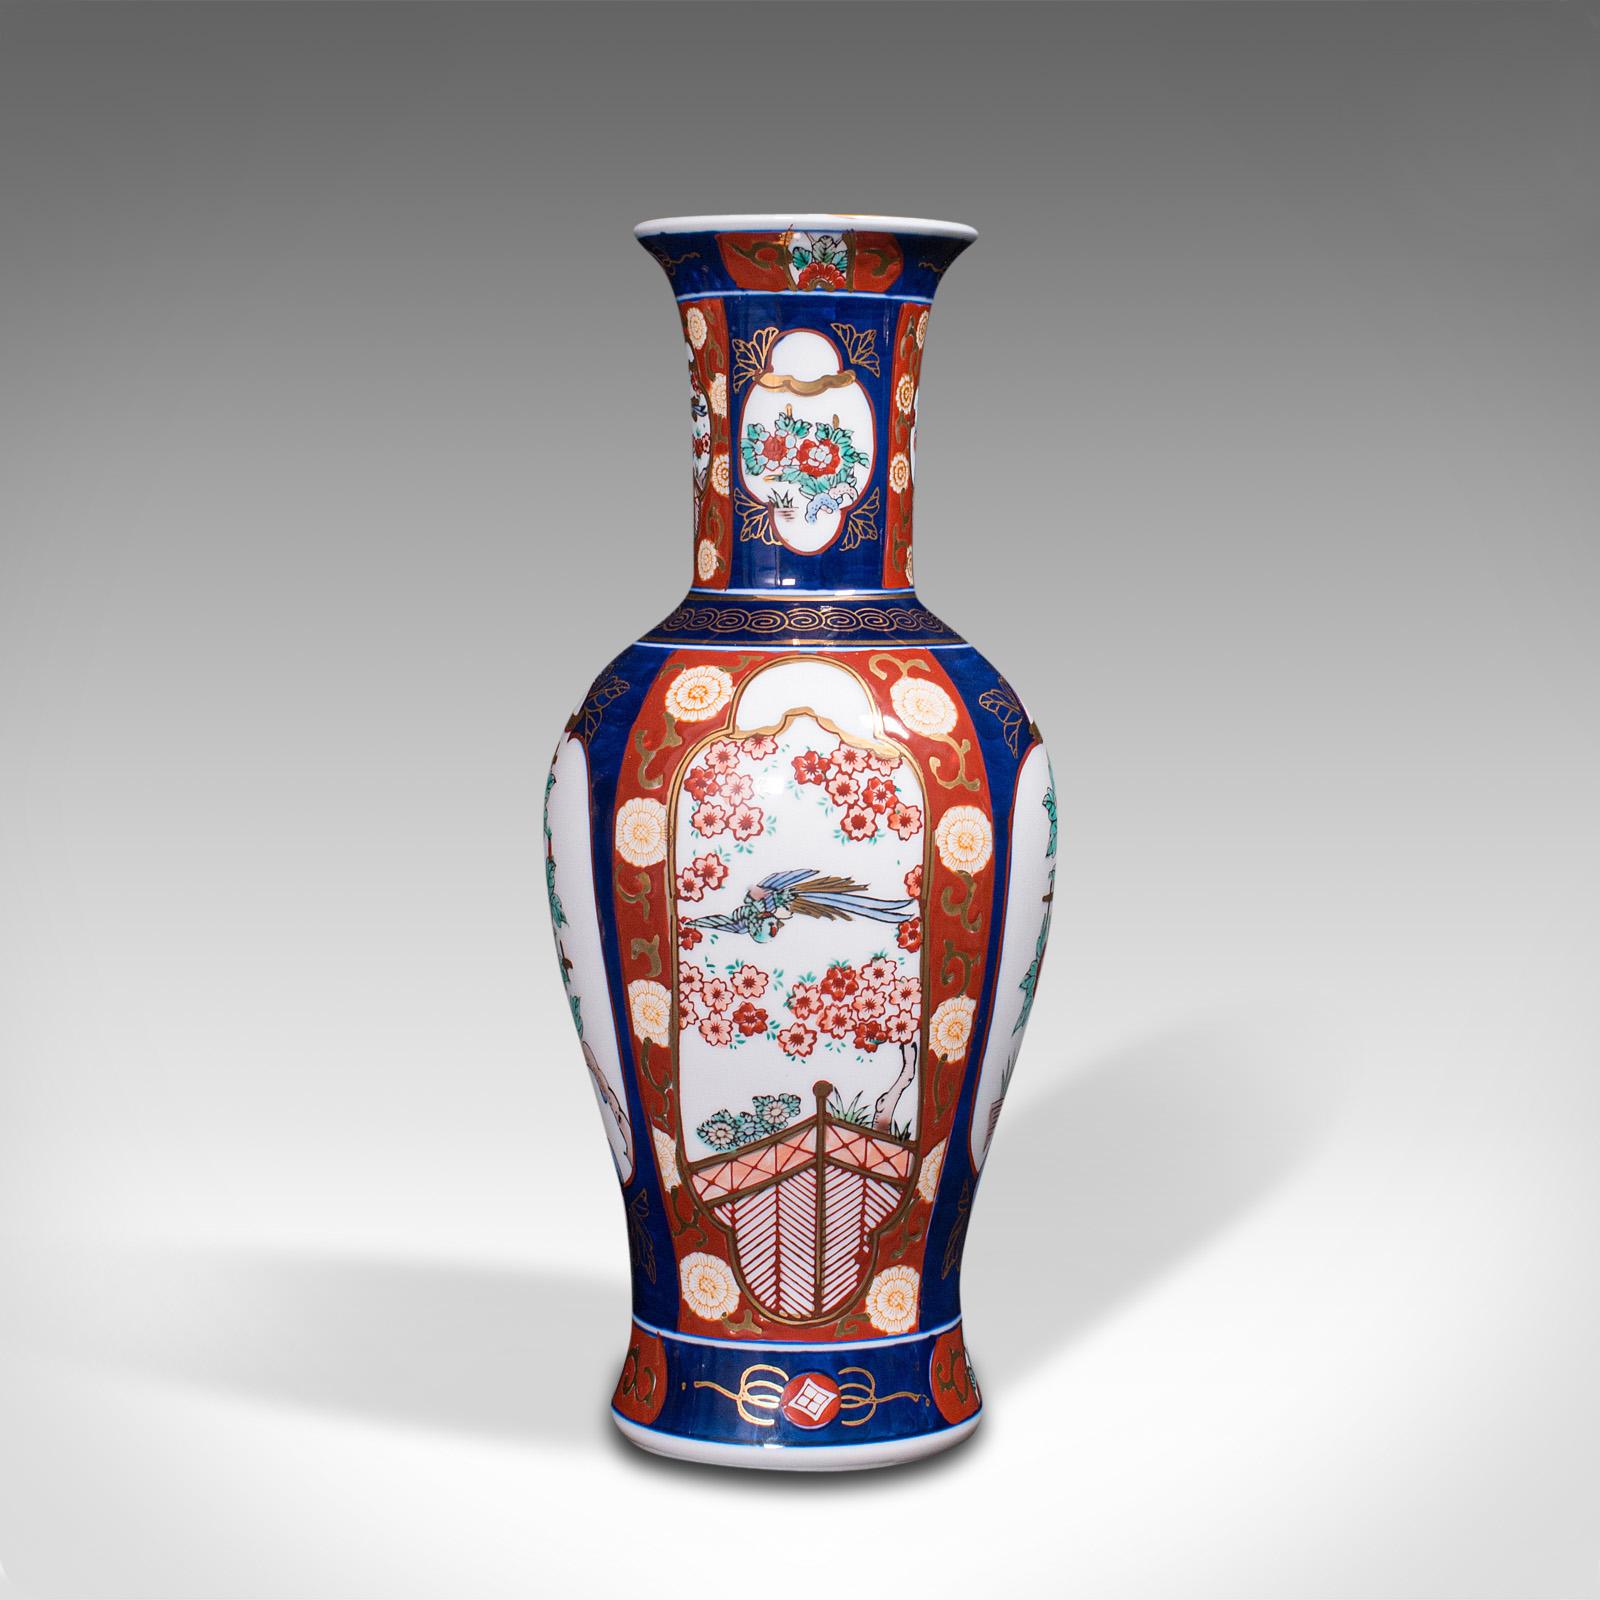 Ceramic Pair of Vintage Flower Vases, Chinese, Display Urn, Imari Revival, Late 20th.C